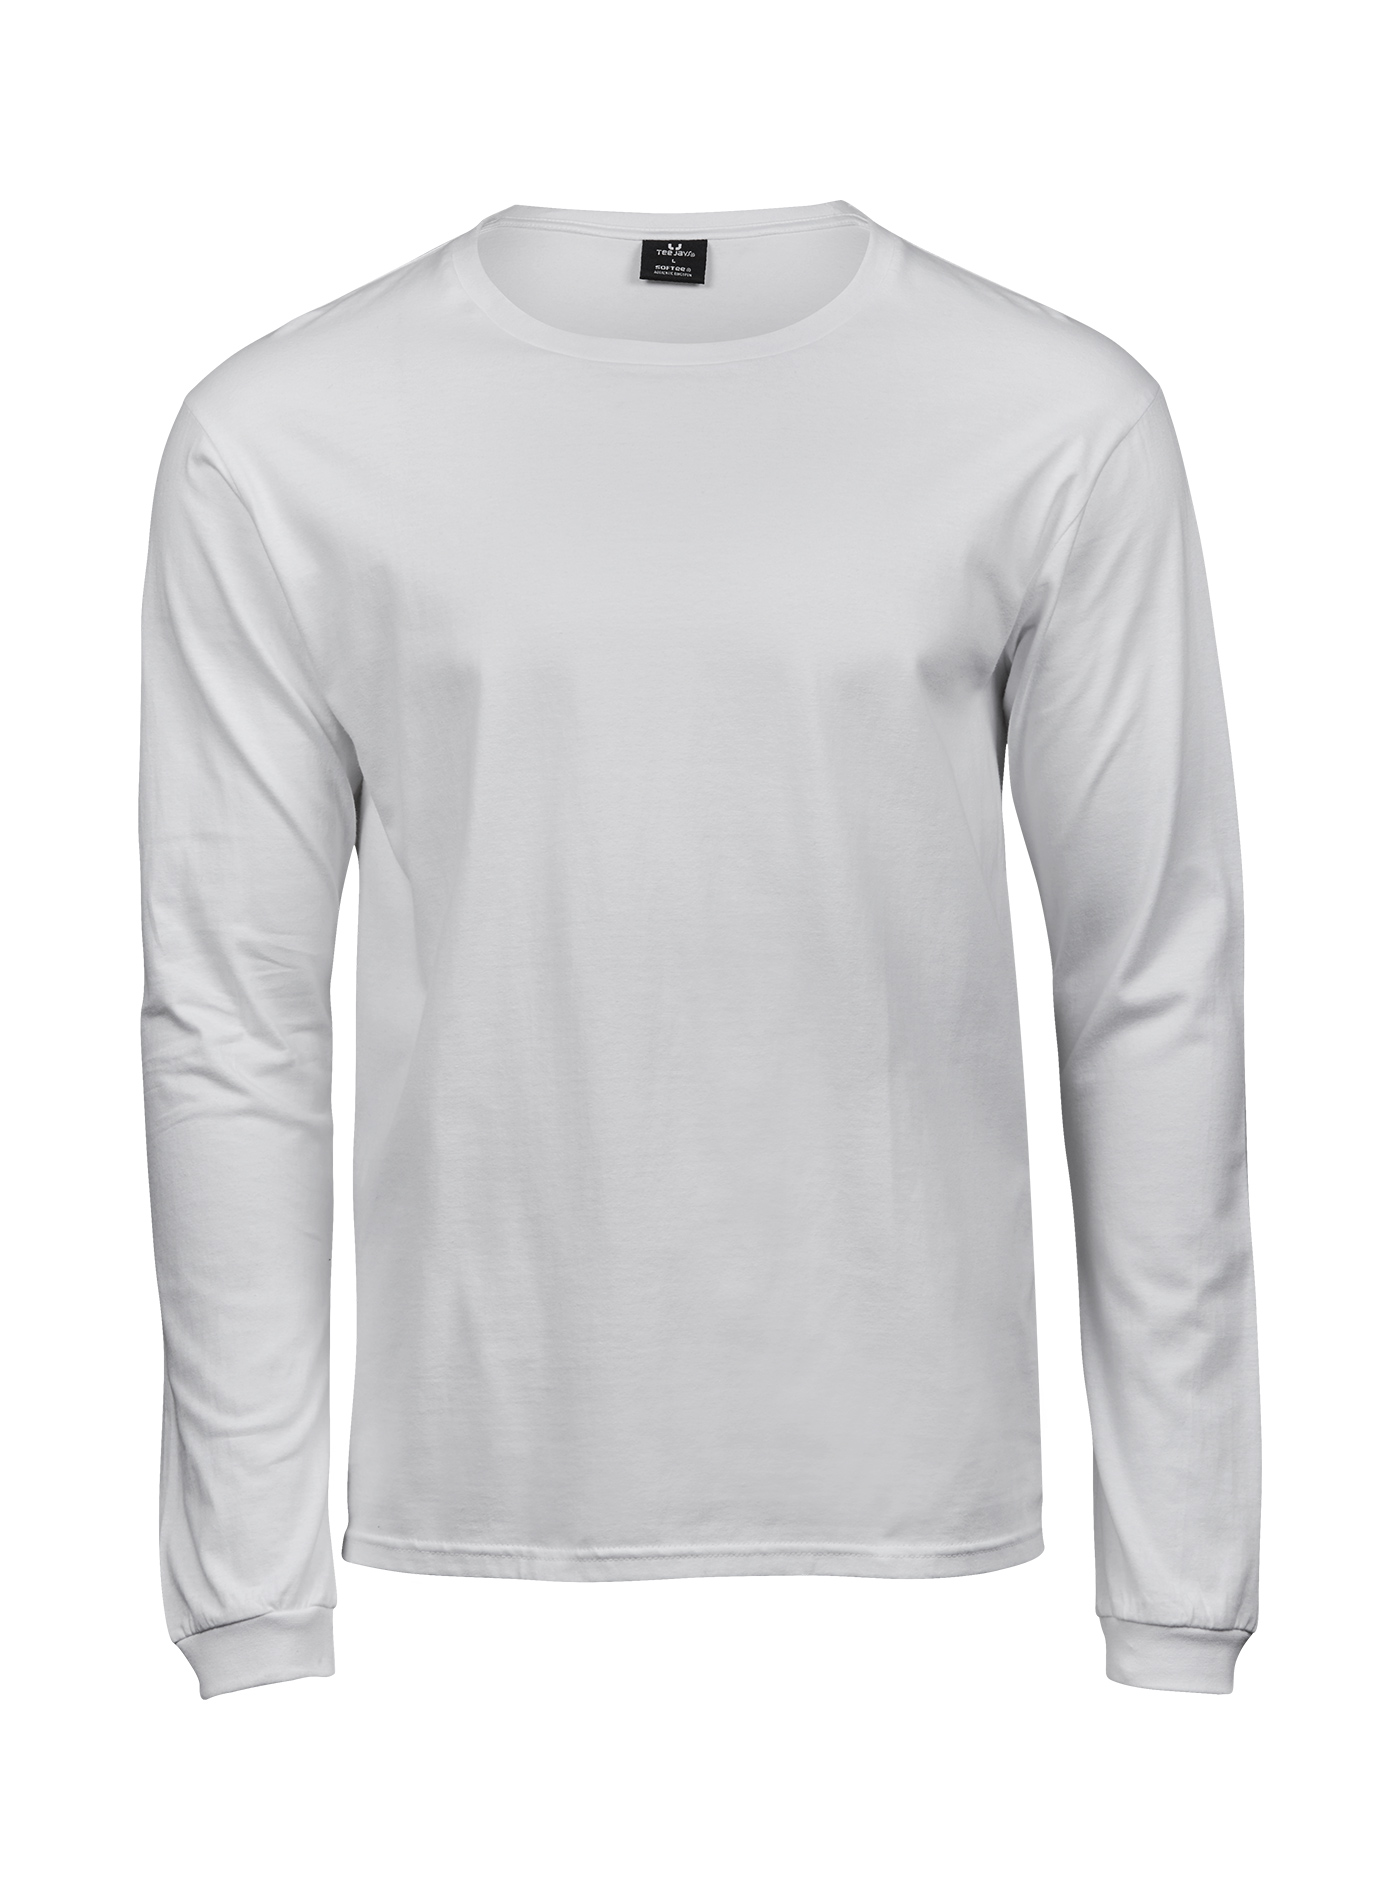 Pánské tričko s dlouhým rukávem Tee Jays Sof-Tee - Bílá 3XL